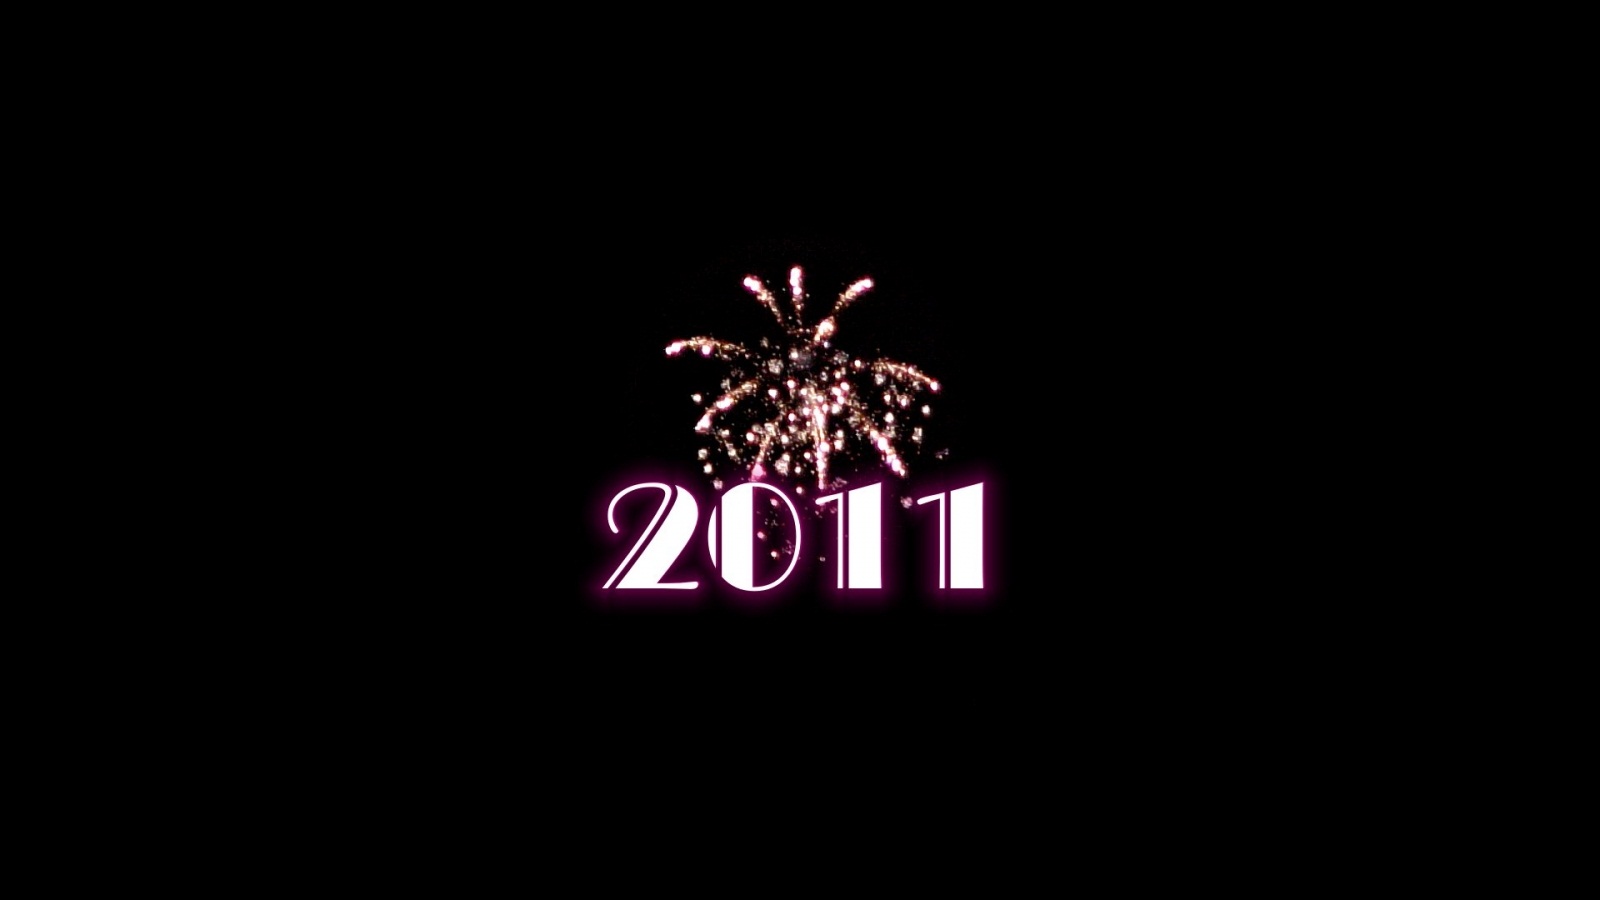 2011 год обои. Топ обои новый год 2011. Новый год 2011 картинки. Картинки 2011. Брэндл картинки 2011.